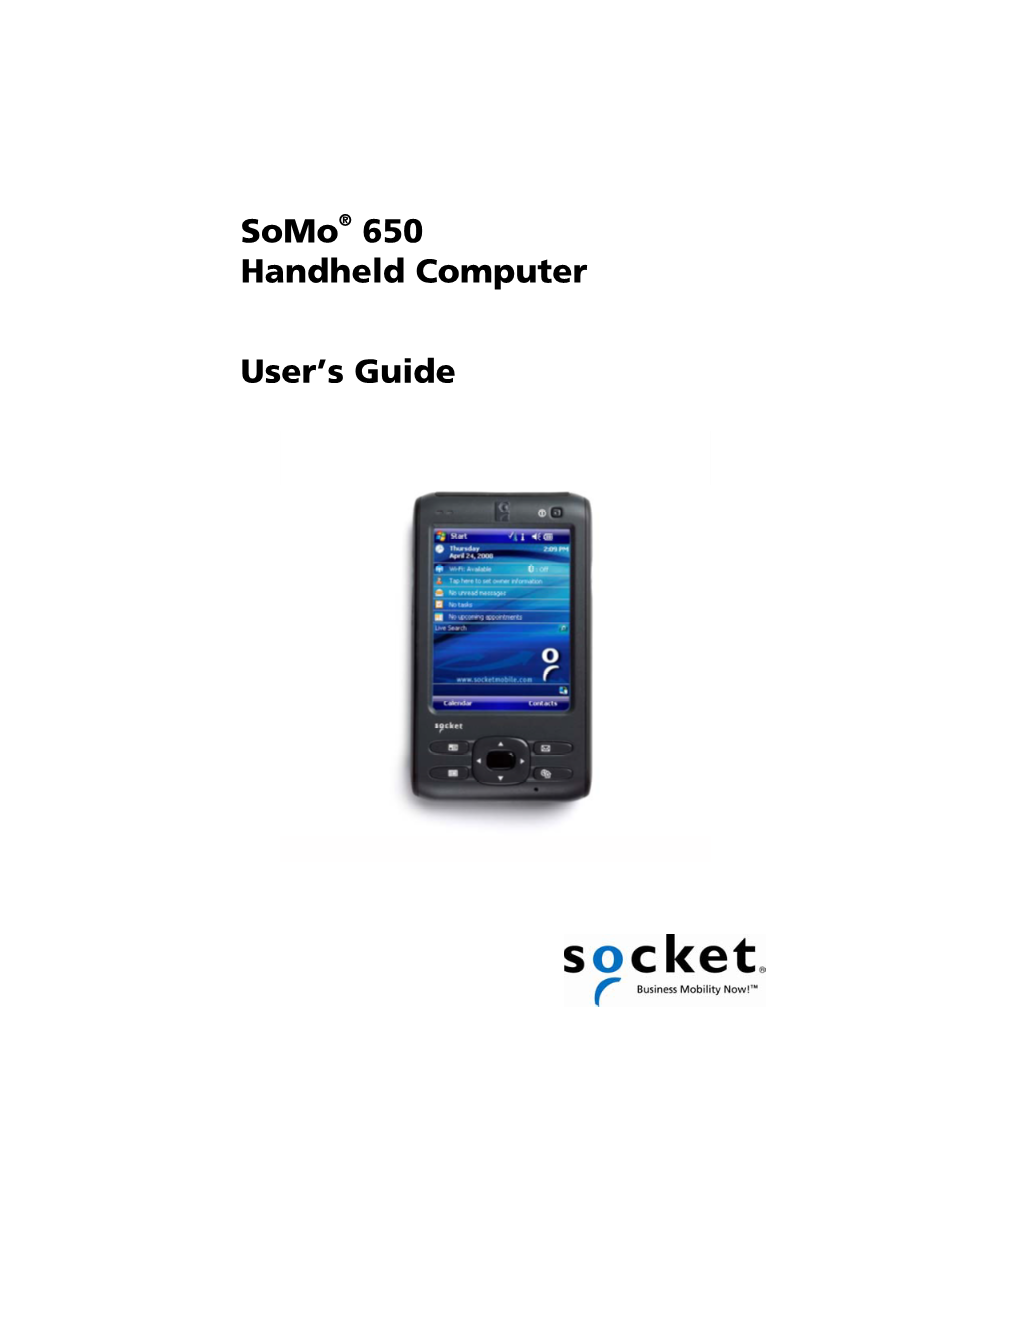 Socket Somo 650 User's Guide